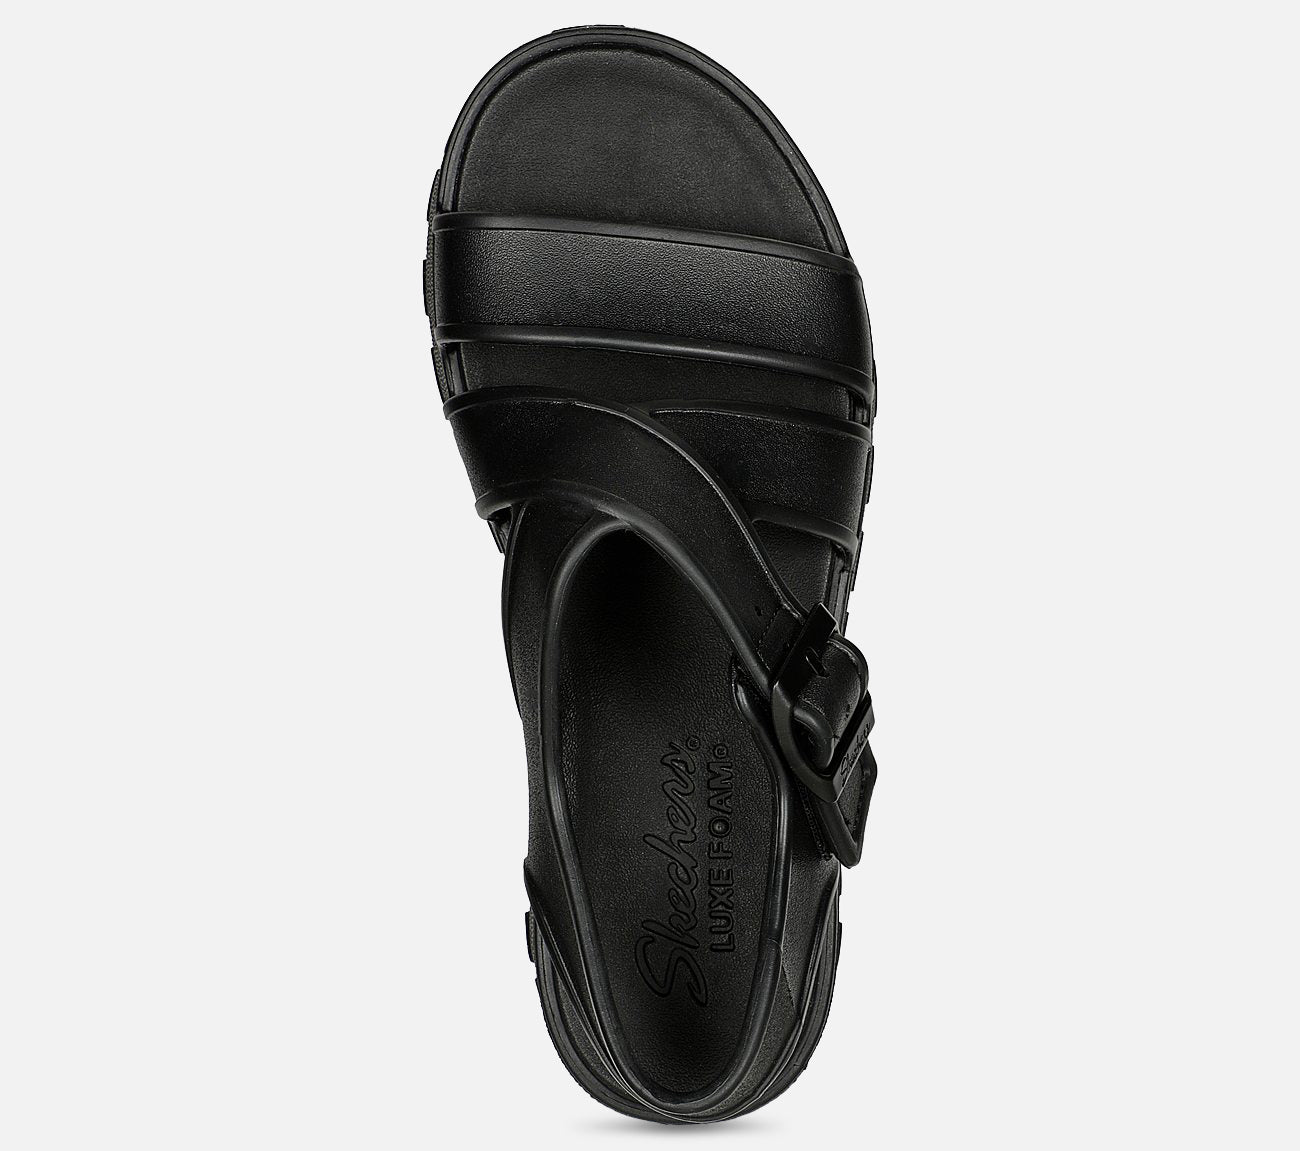 Footsteps - Summer Bliss Sandal Skechers